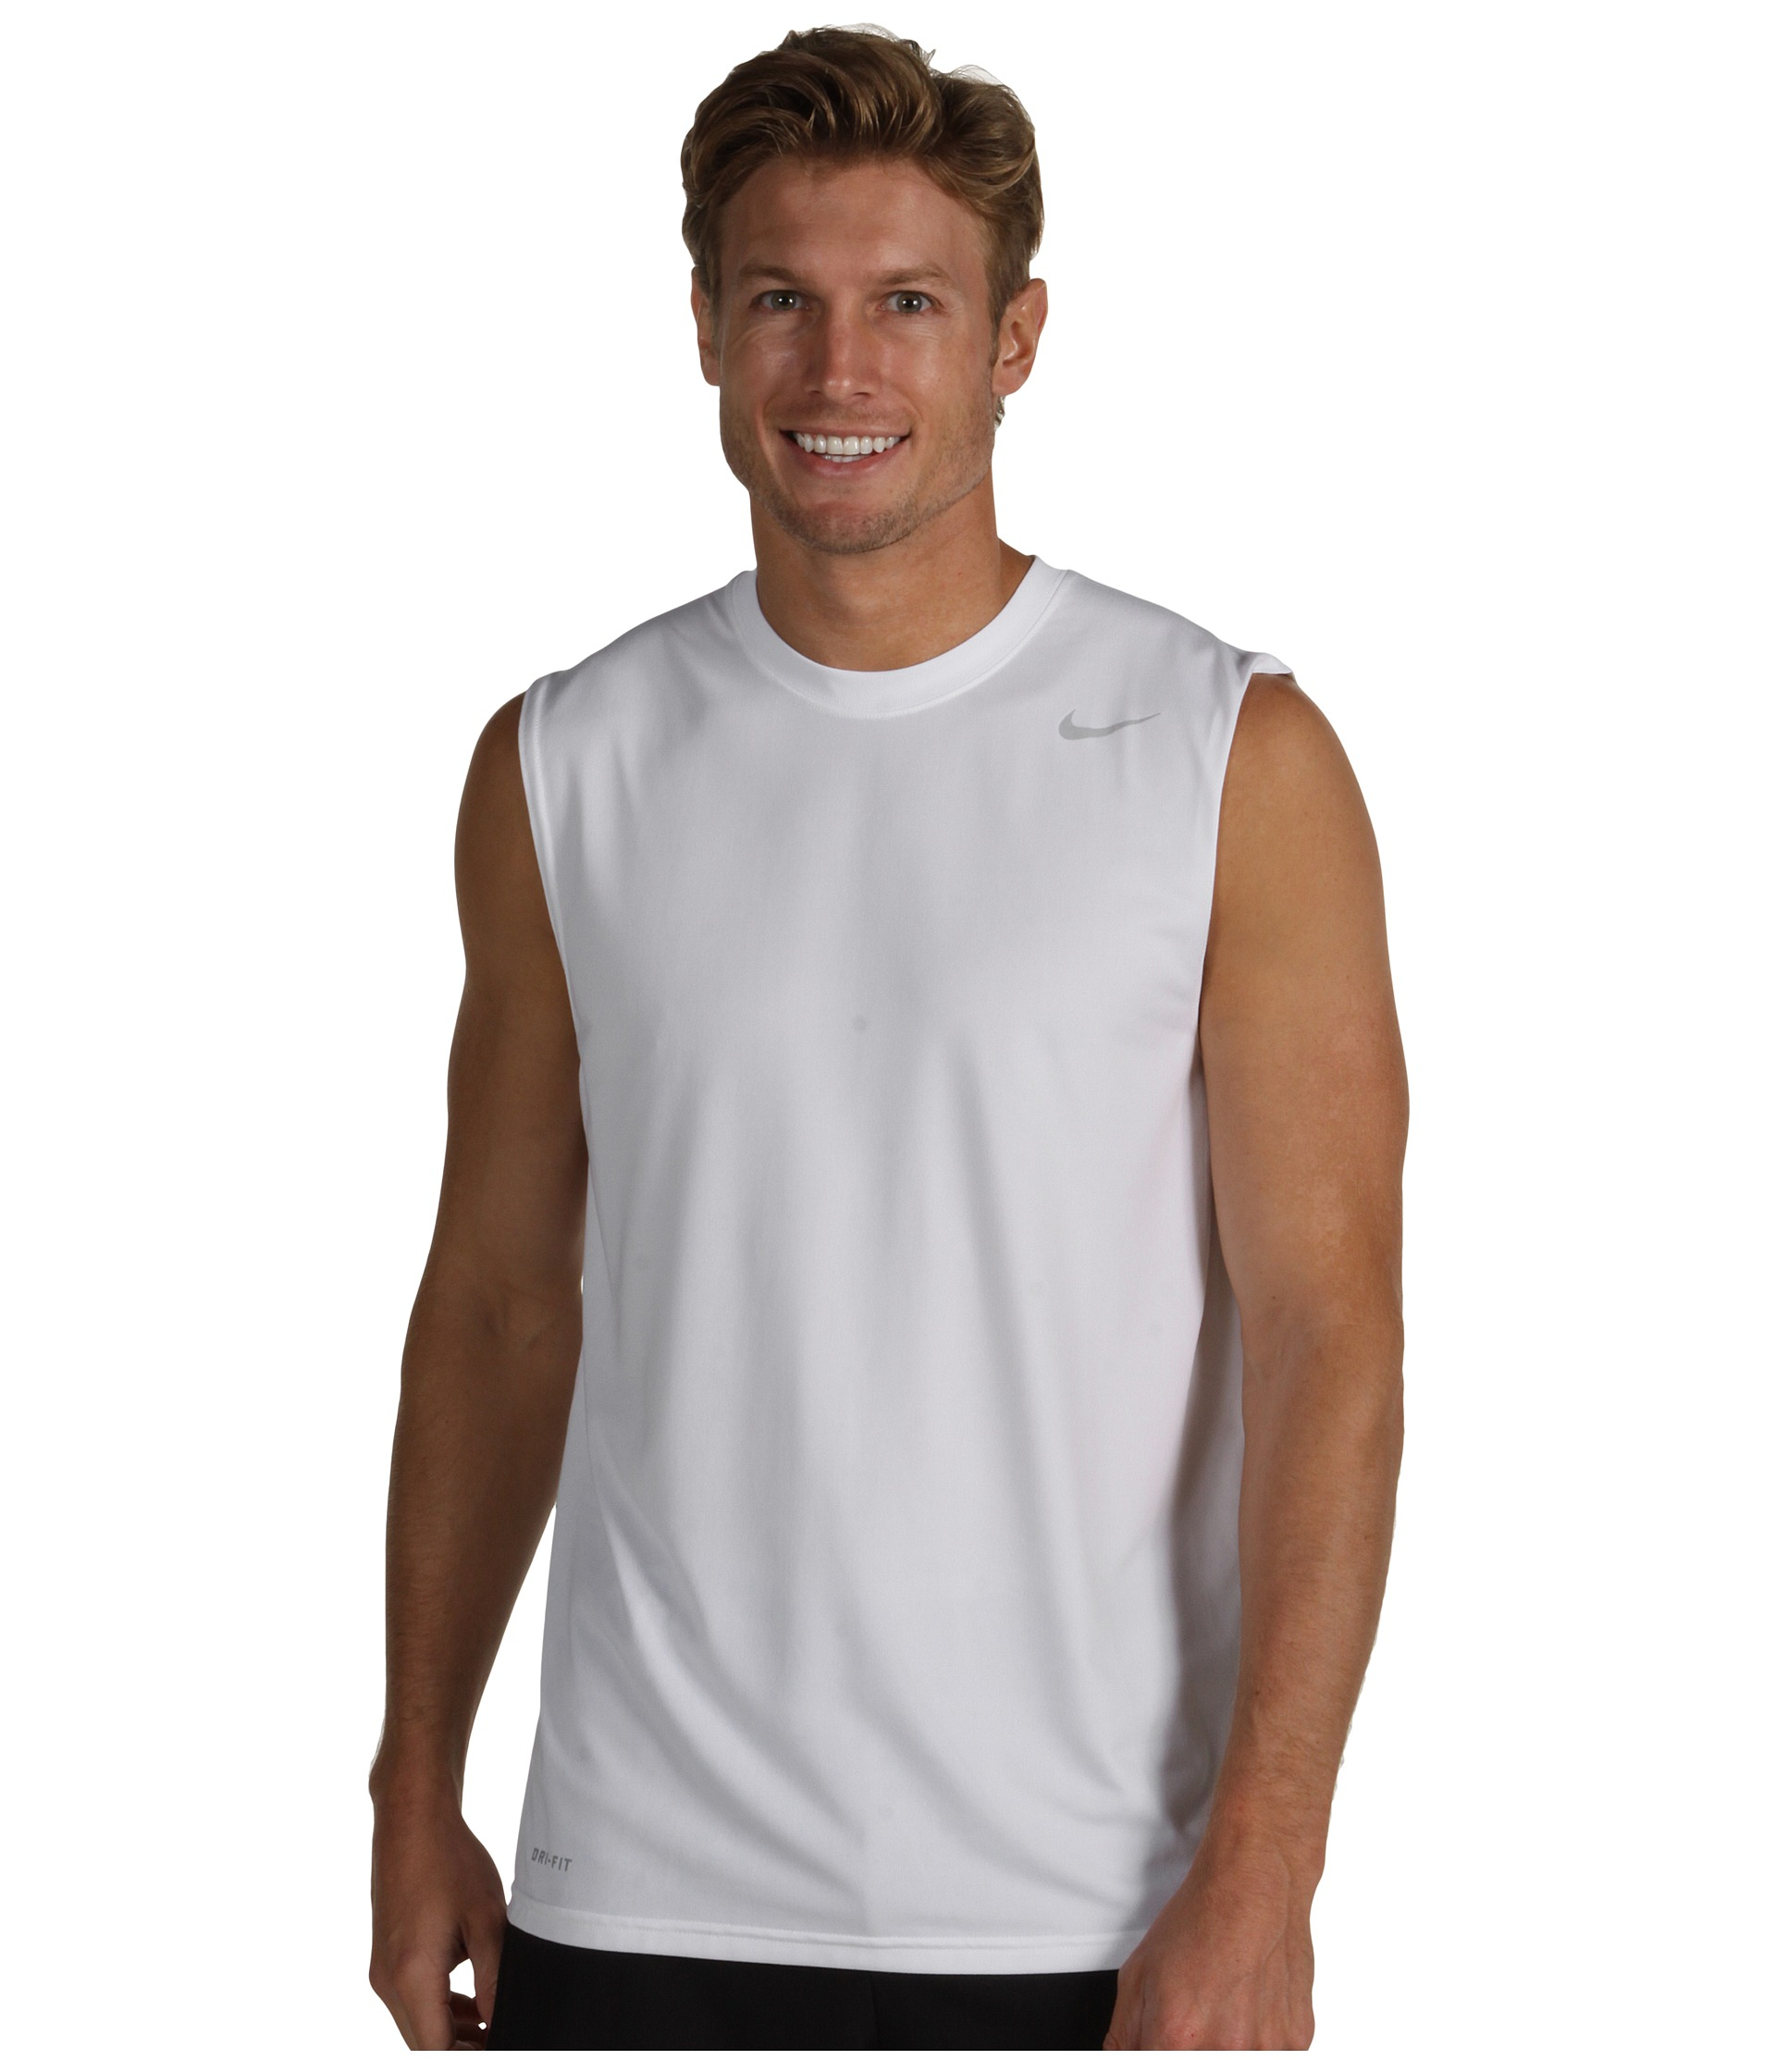 sleeveless dri fit shirts